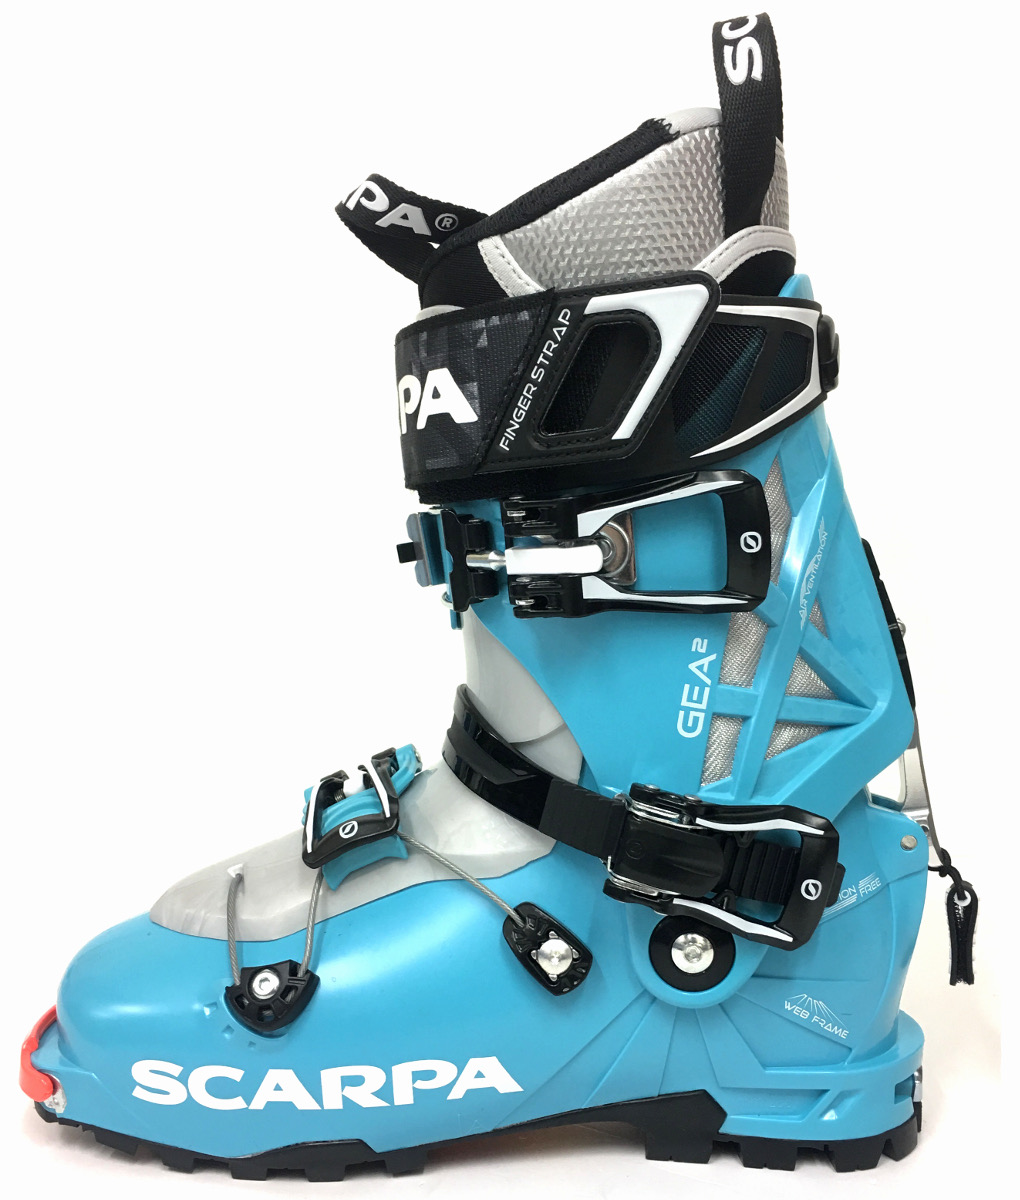 Nouvelle chaussure de ski de randonnée Scarpa 2018 : la Gea 2